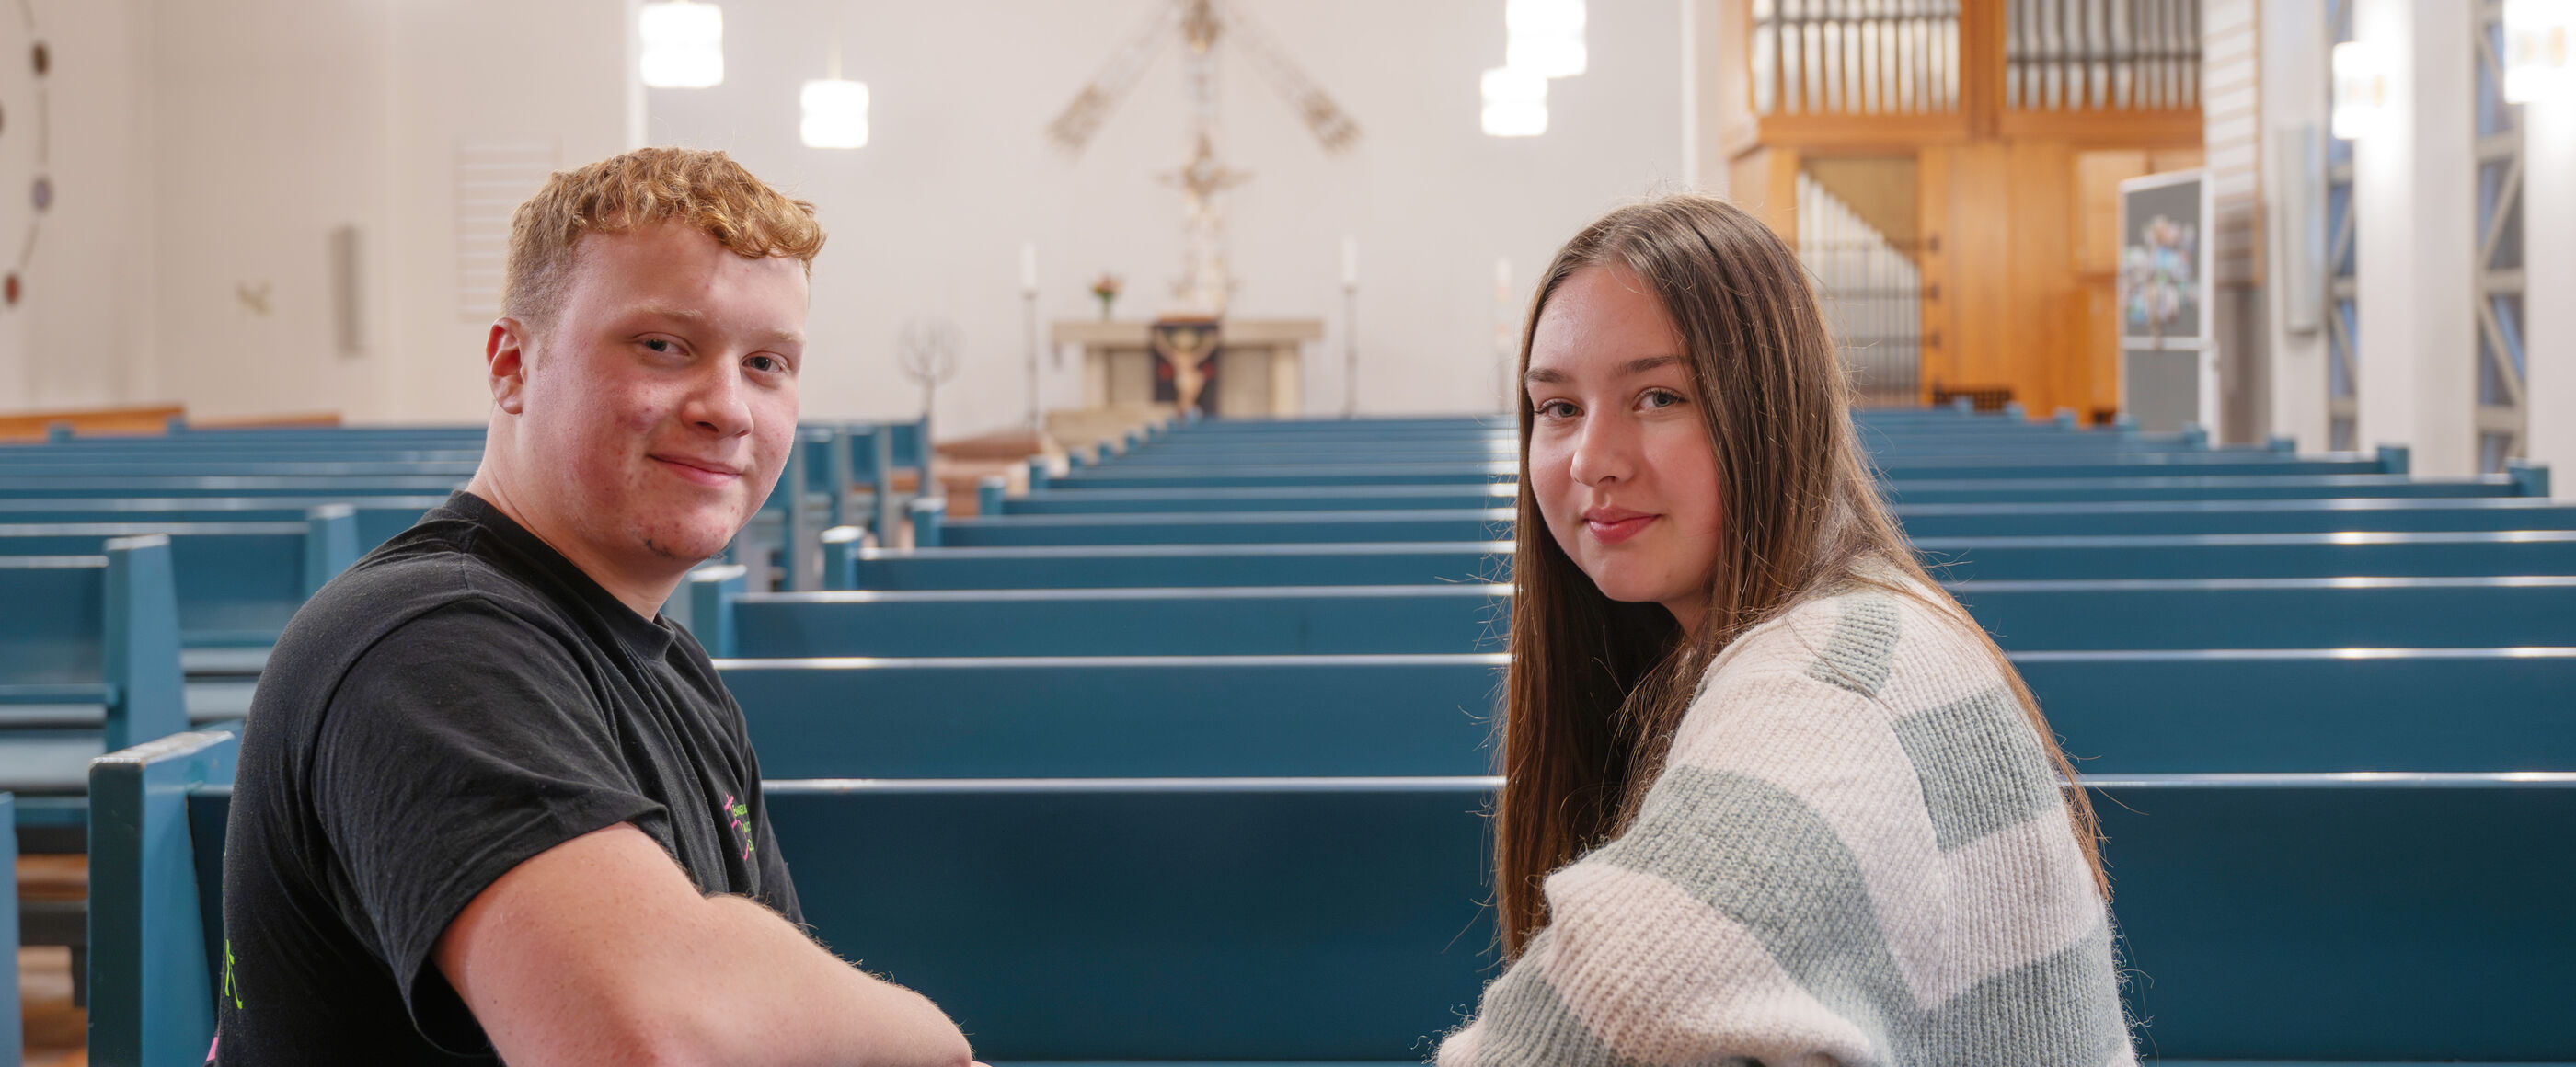 Ein junger Mann und eine junge Frau sitzen in einer Kirche auf einer Kirchenbank.